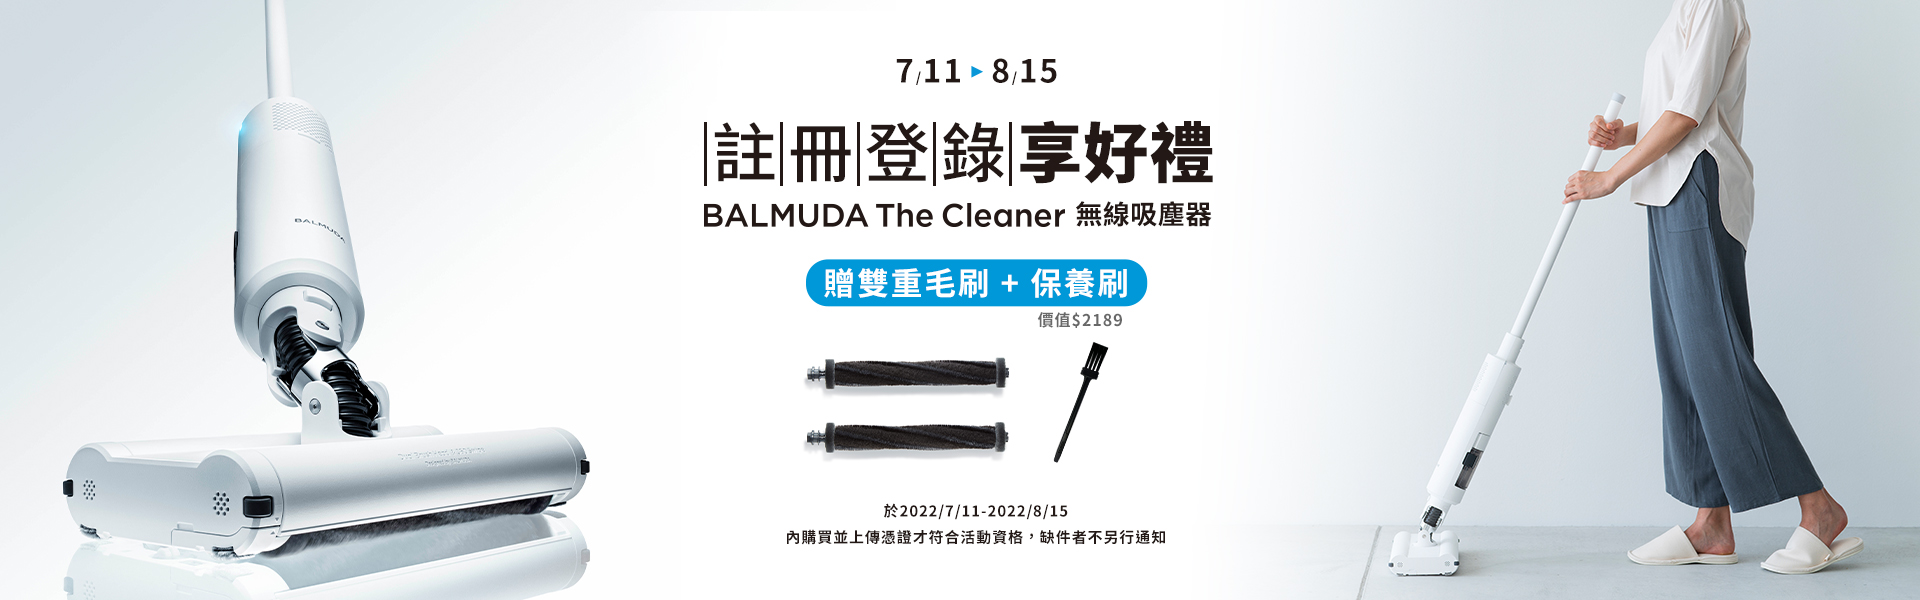 【BALMUDA The Cleaner 無線吸塵器】清掃隨心移動 完成產品註冊再贈二好禮